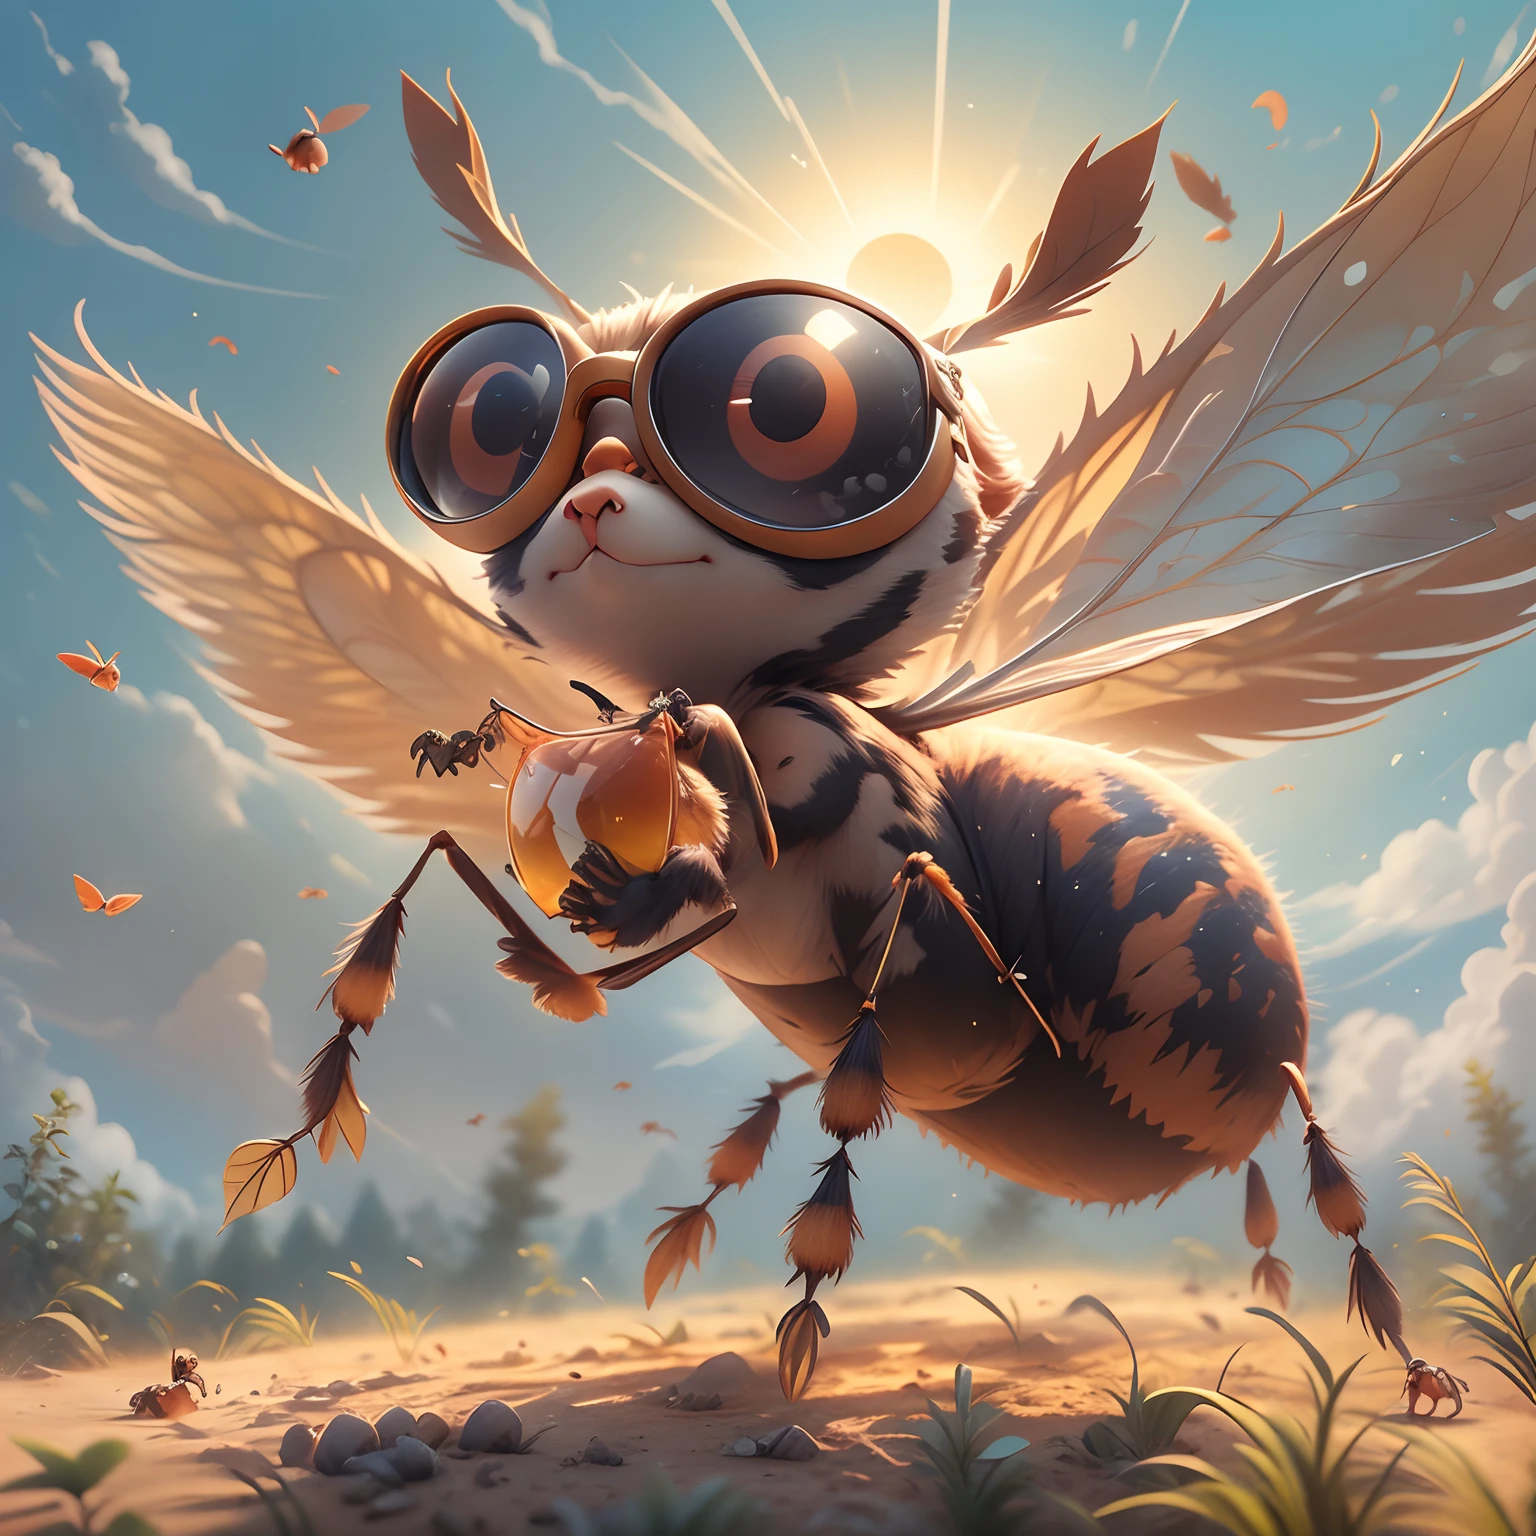 一隻會飛的螞蟻，英俊的，威風凜凜，戴護目鏡，卡通風格，數位繪畫，背景是天空，陽光照在螞蟻身上